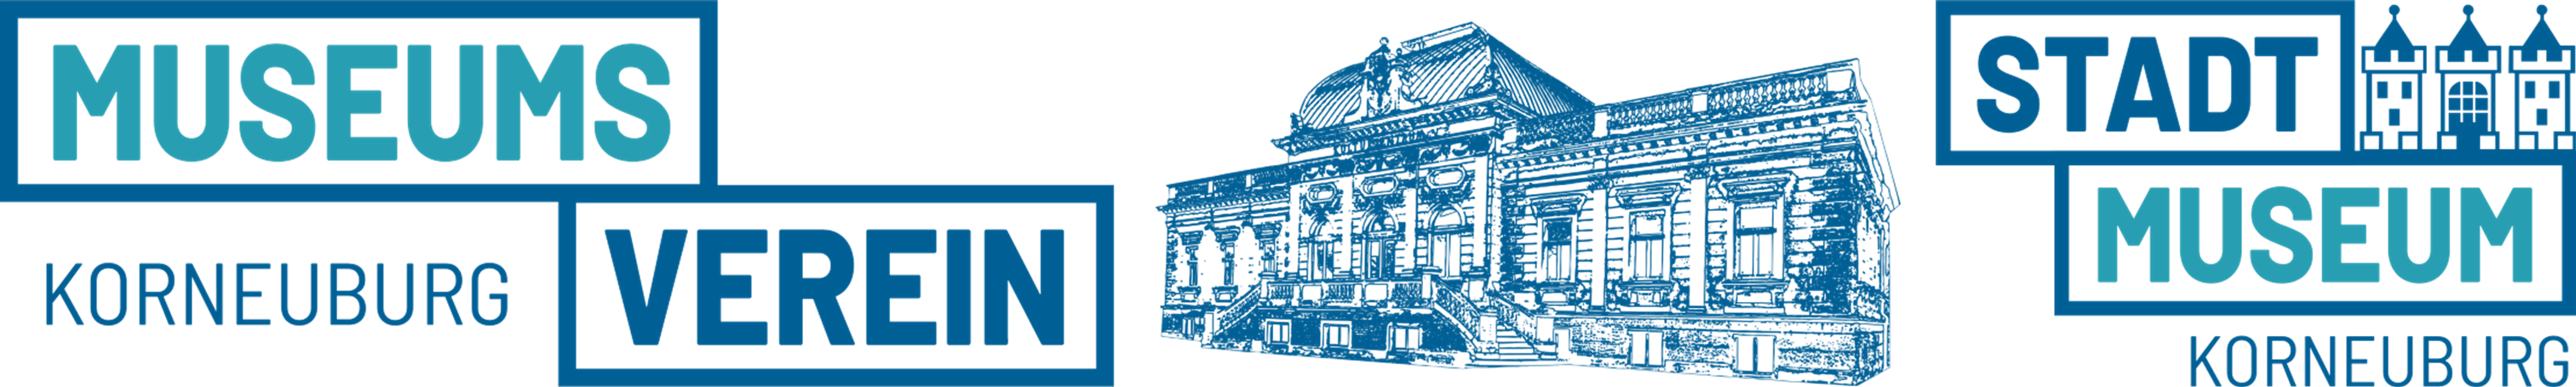 Logo Museumsverein Korneuburg